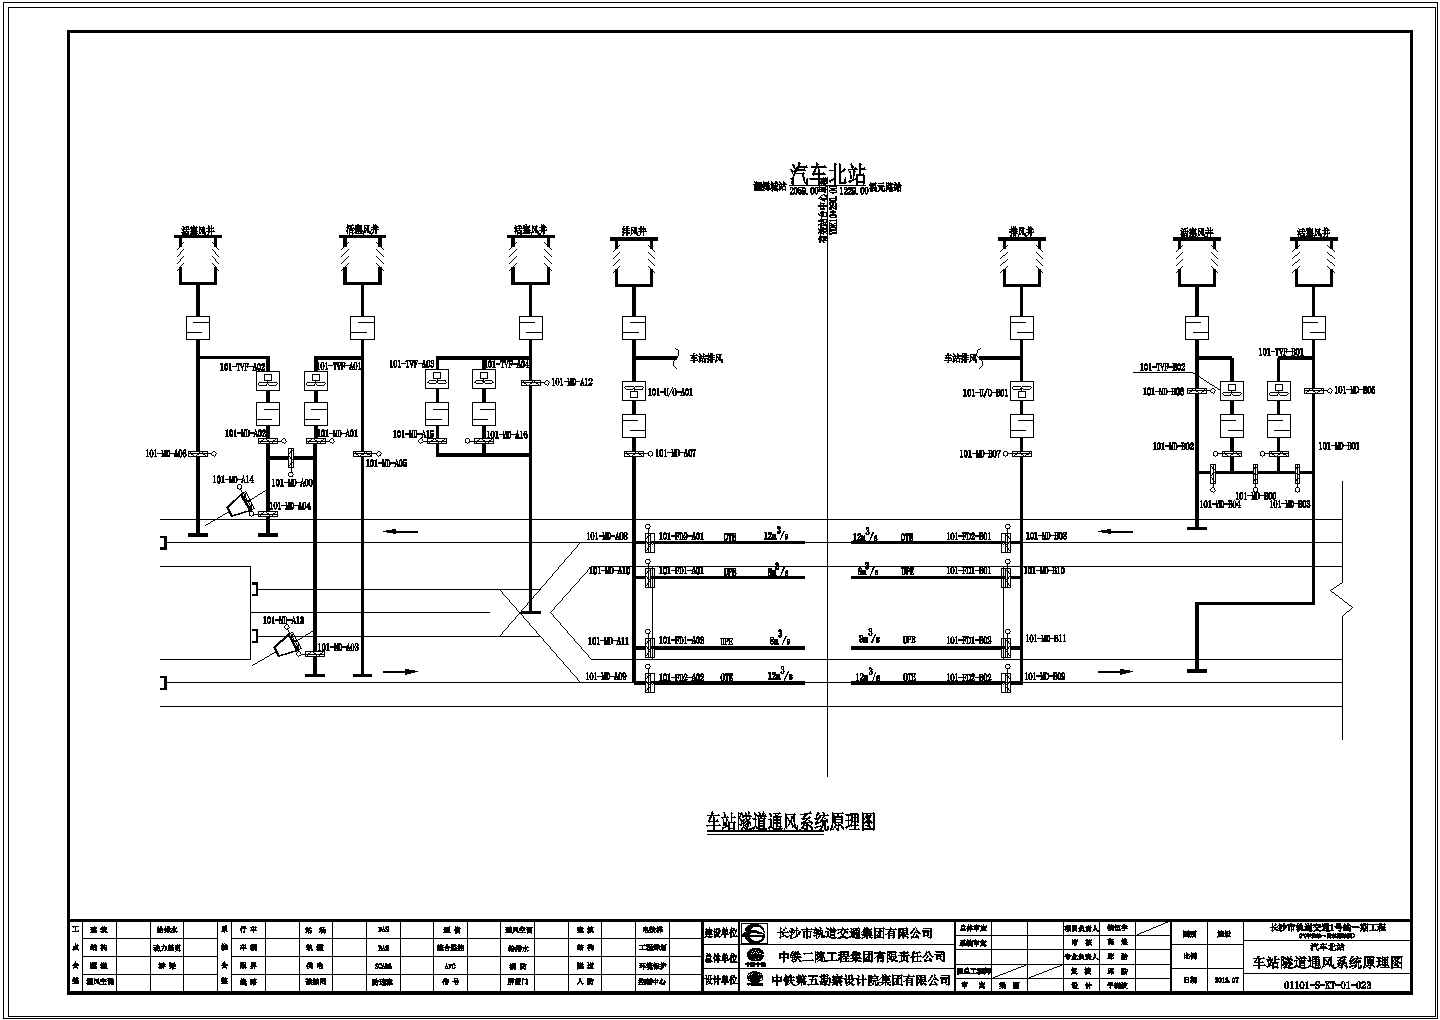 长沙市轨道交通1号线一期工程消声器设备采购项目答疑补充附件下载